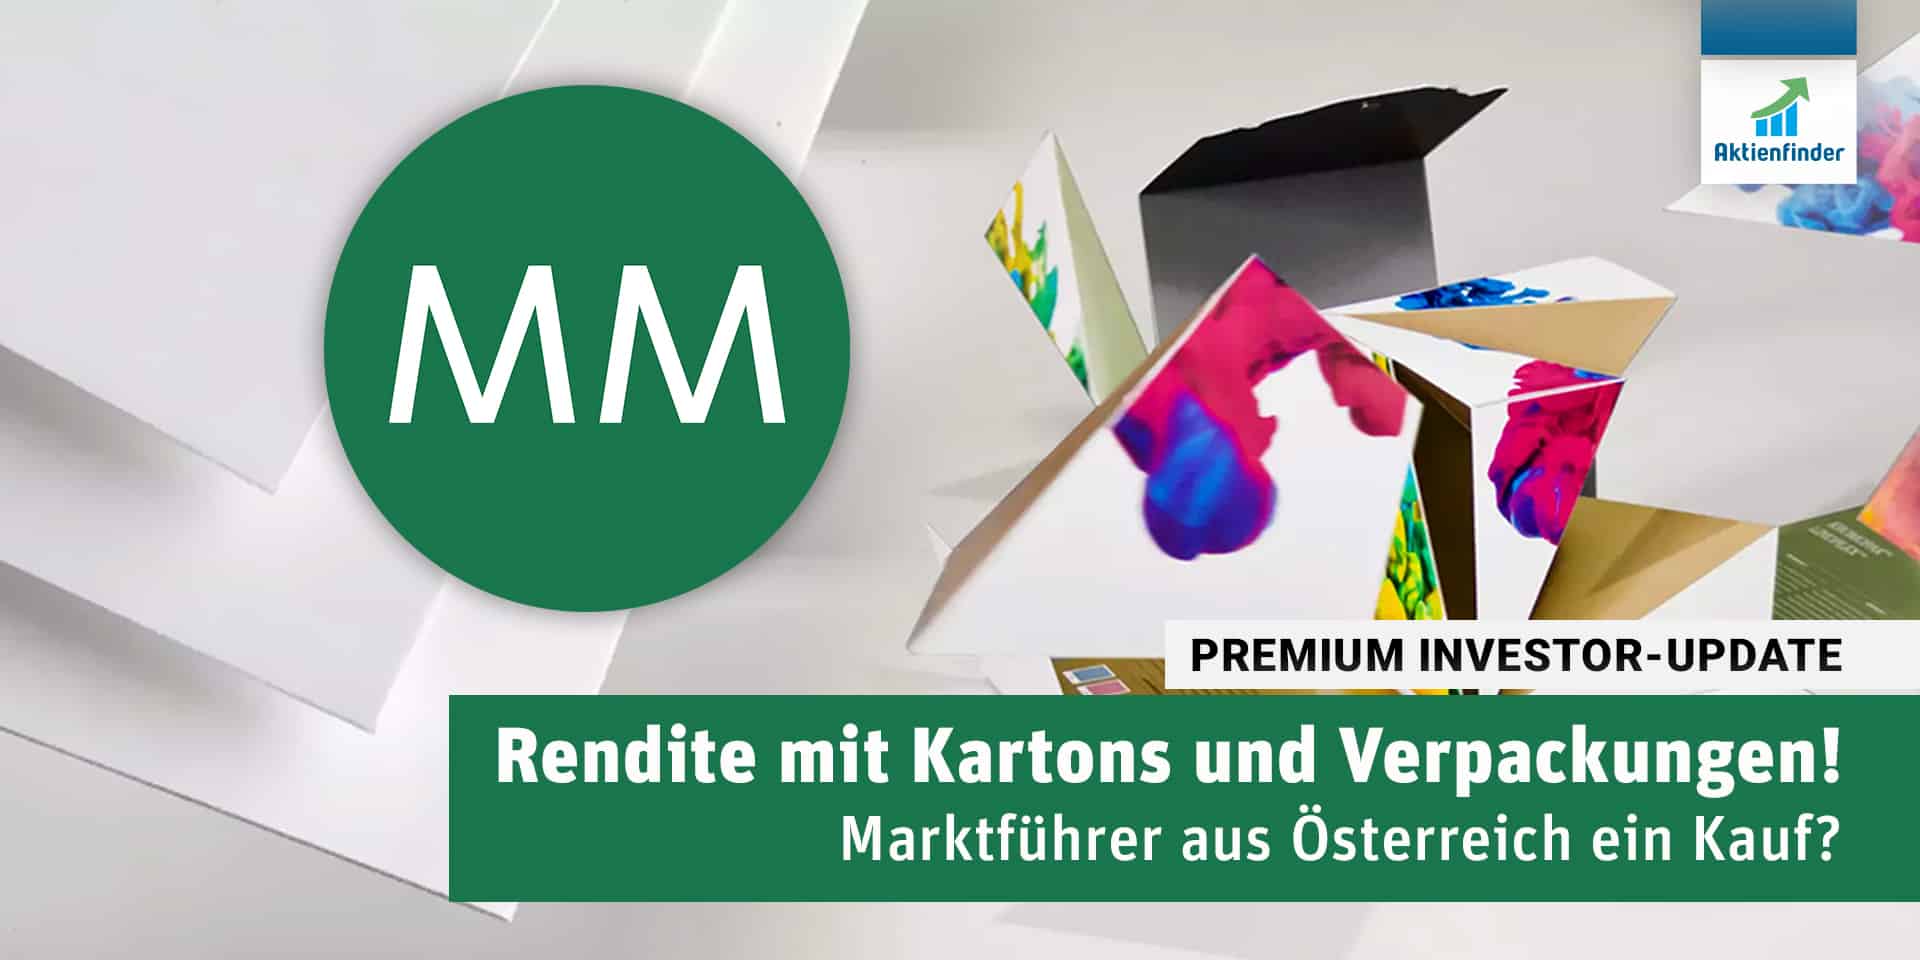 Mayr-Melnhof - Rendite mit Kartons und Verpackungen! Marktführer aus  Österreich ein Kauf?